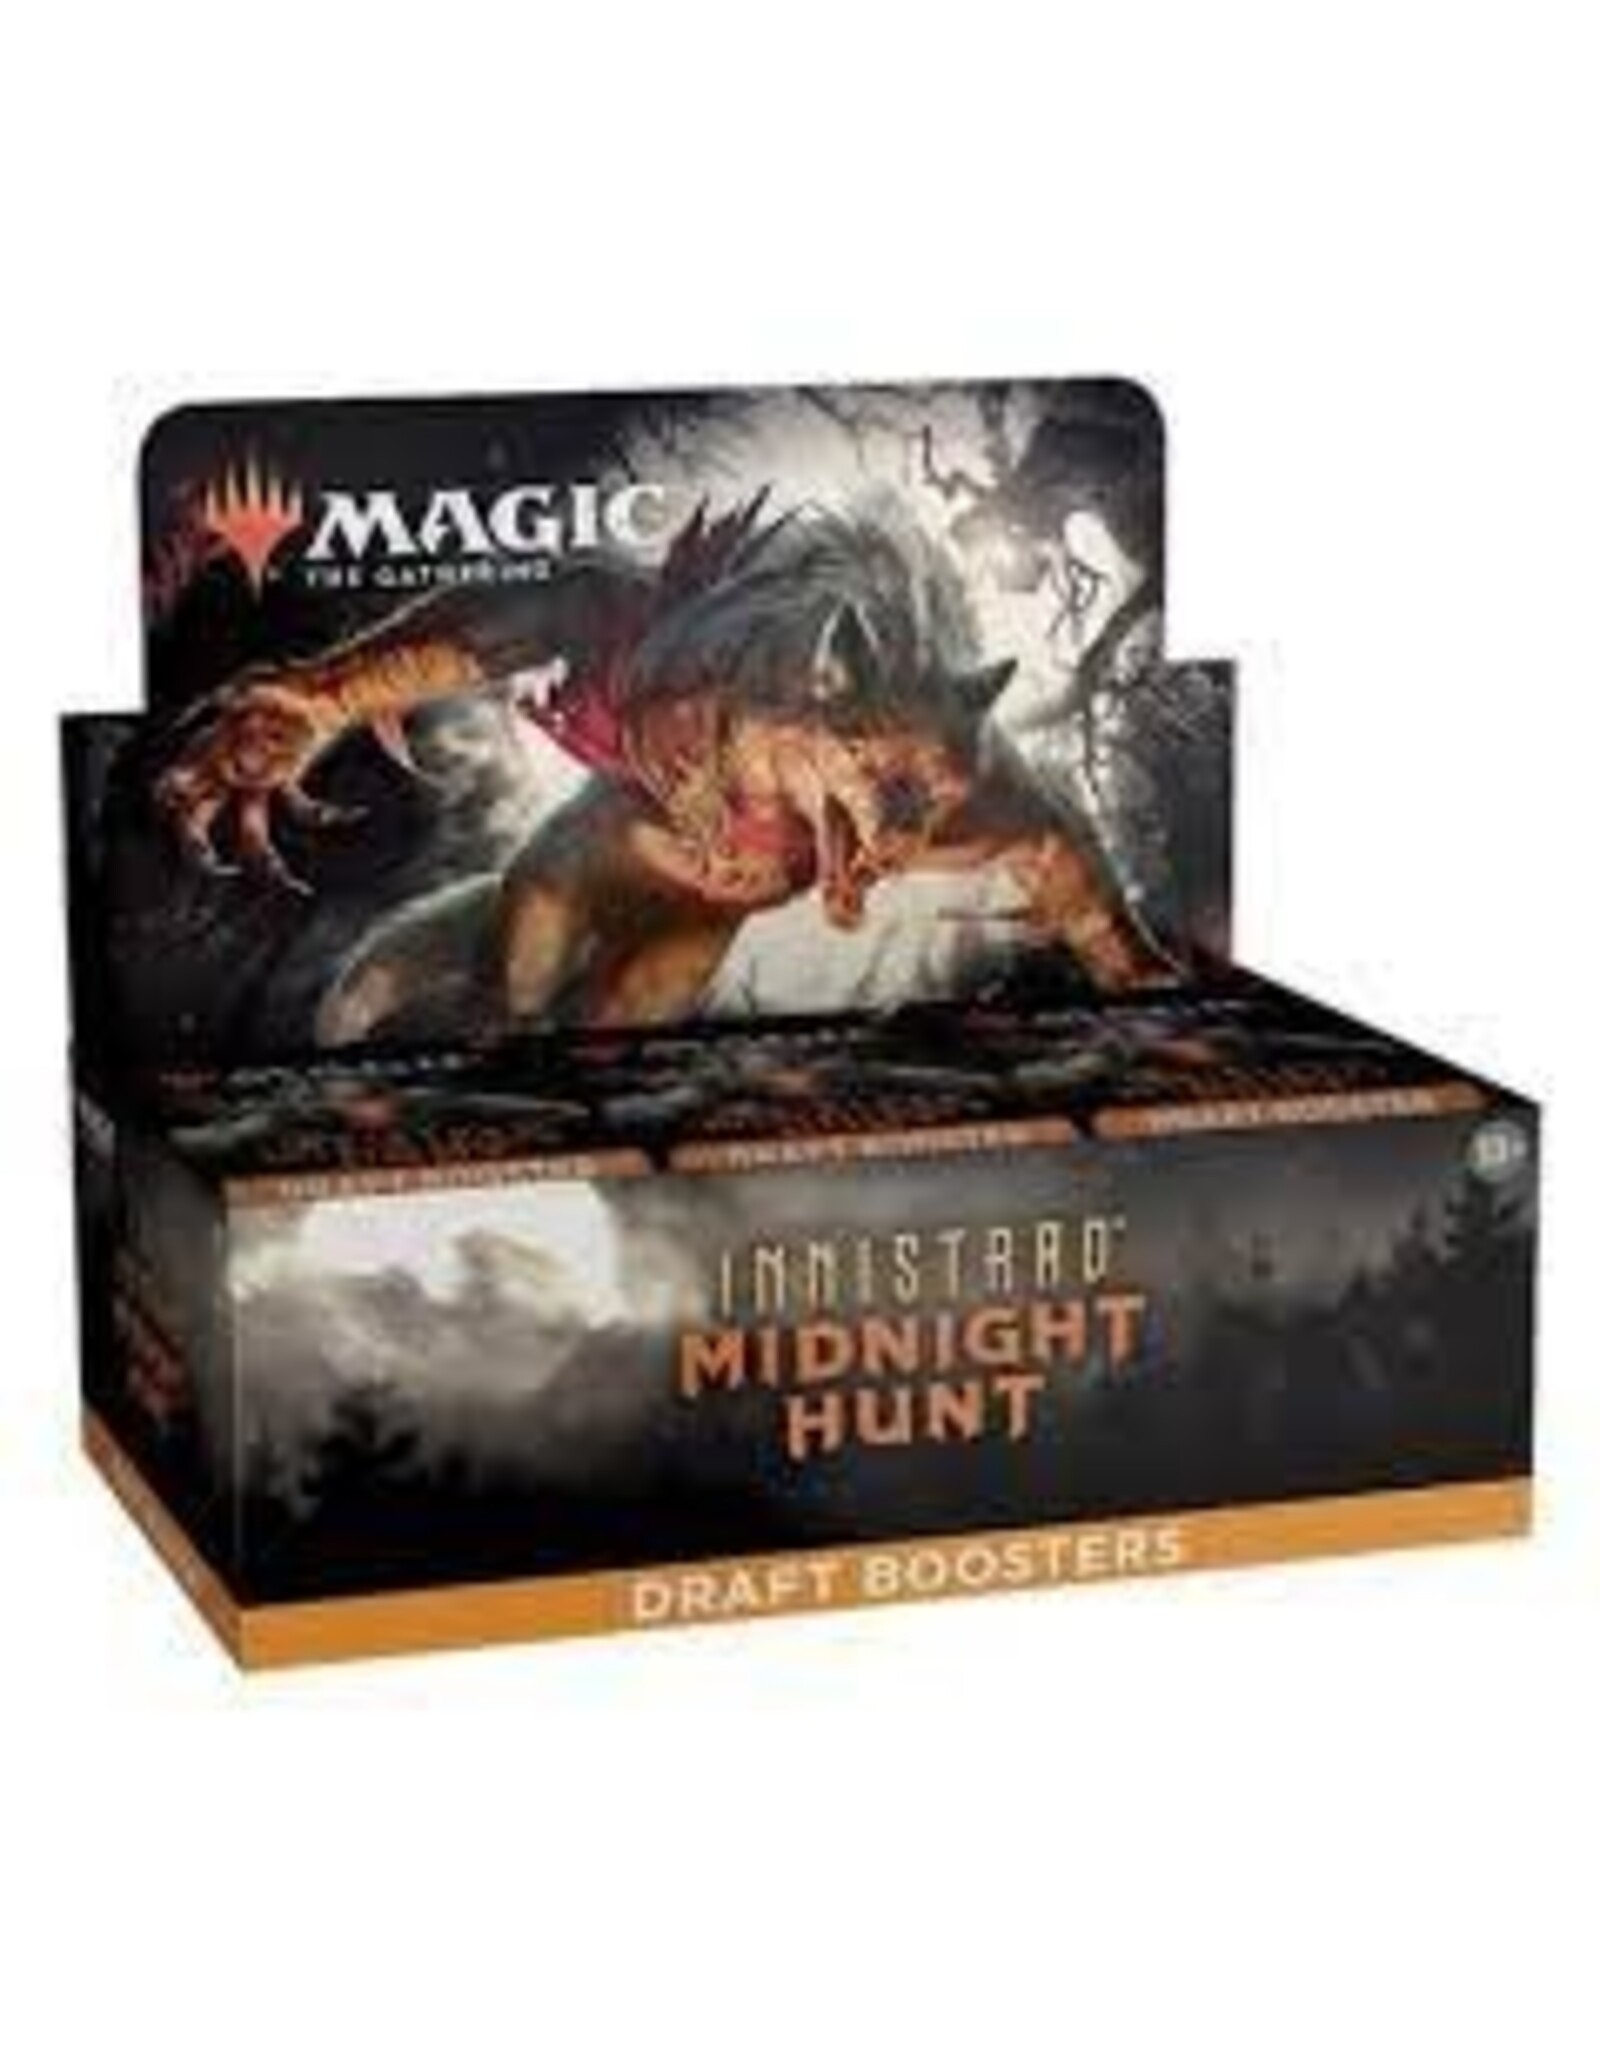 Magic Innistrad Midnight Hunt Draft Booster Box